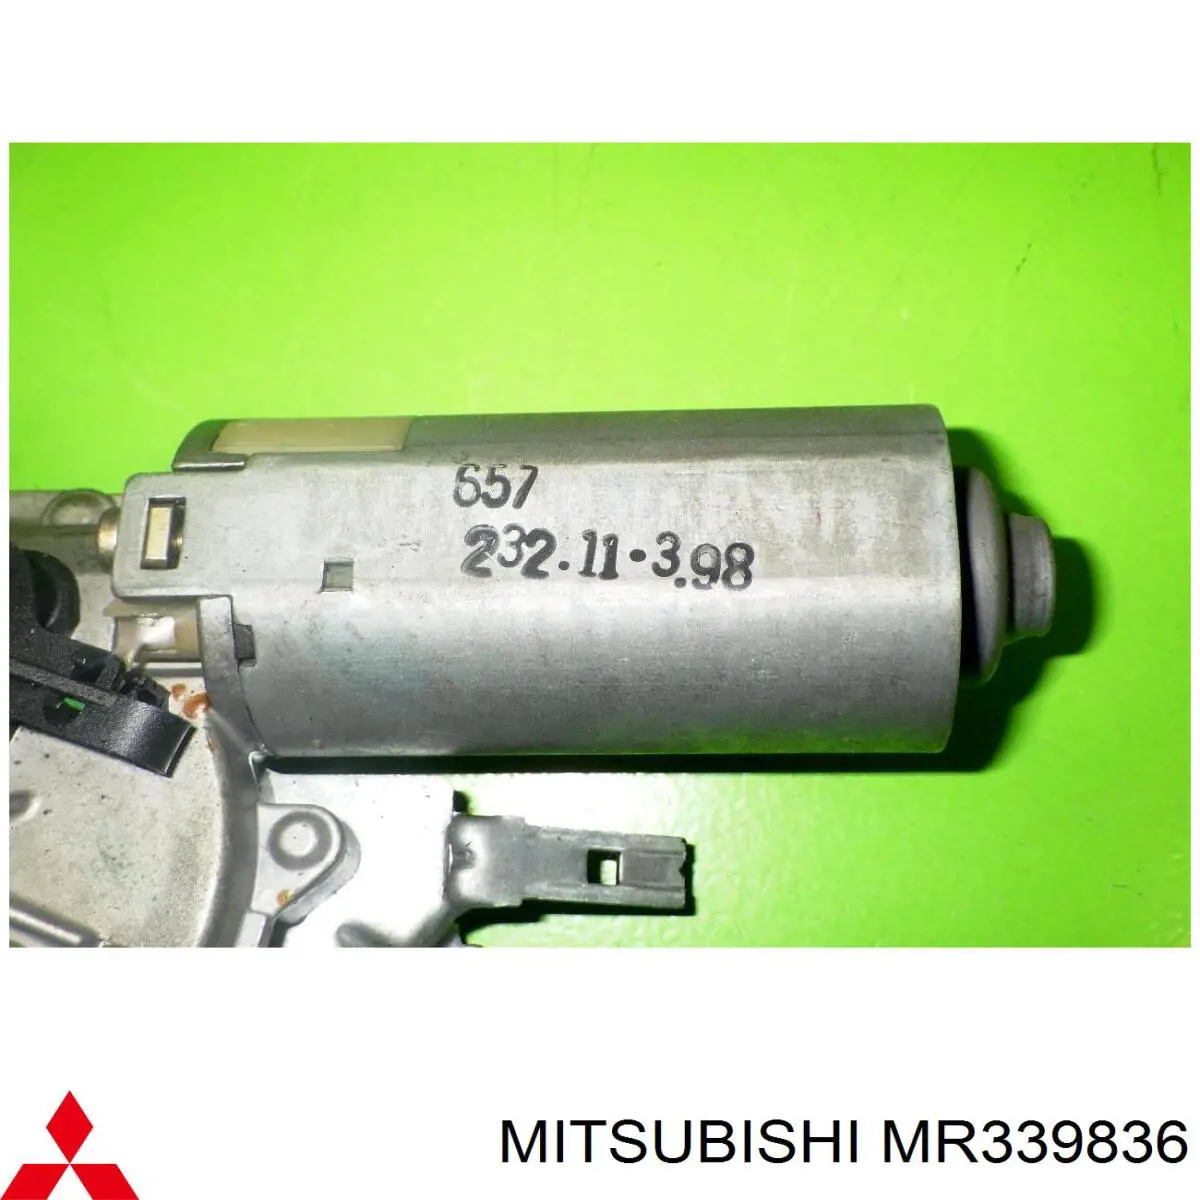 MR339836 Mitsubishi мотор стеклоочистителя заднего стекла